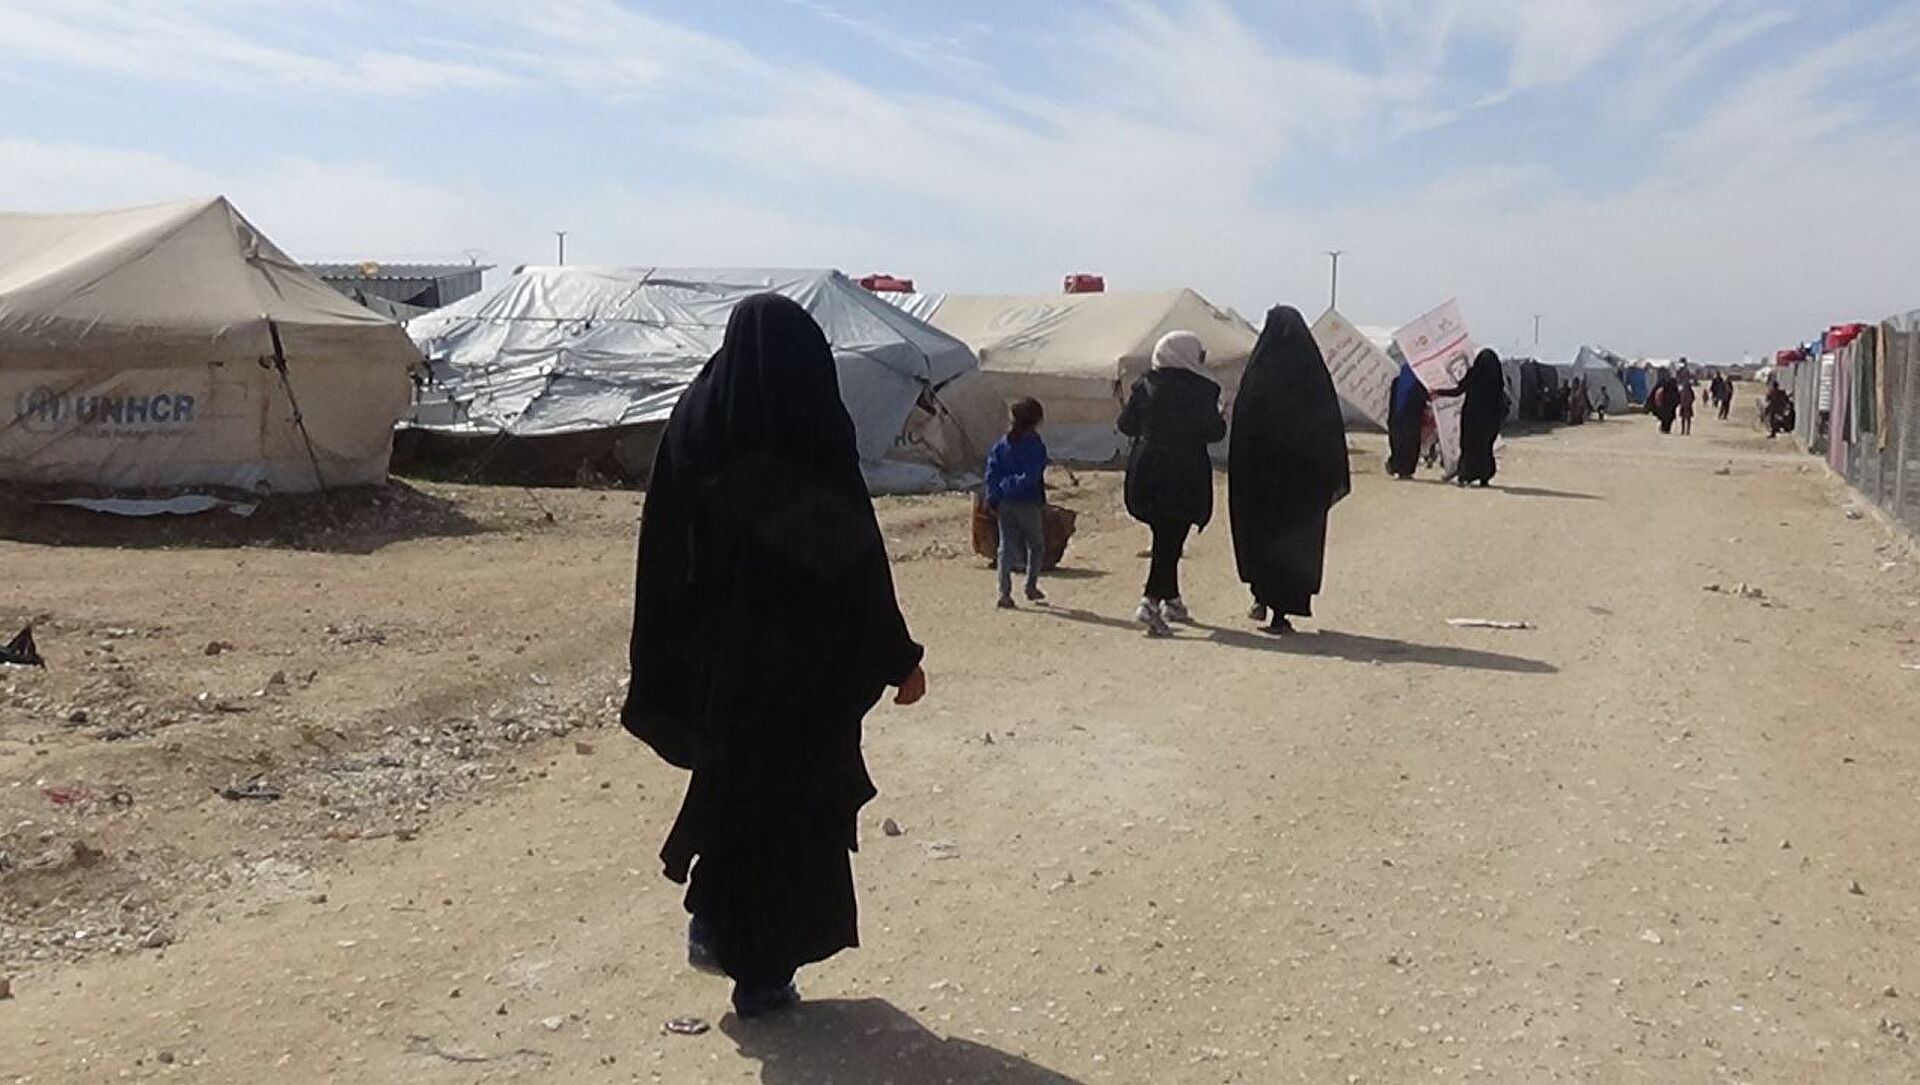 العراق يعلن عدد مواطنيه في مخيم الهول